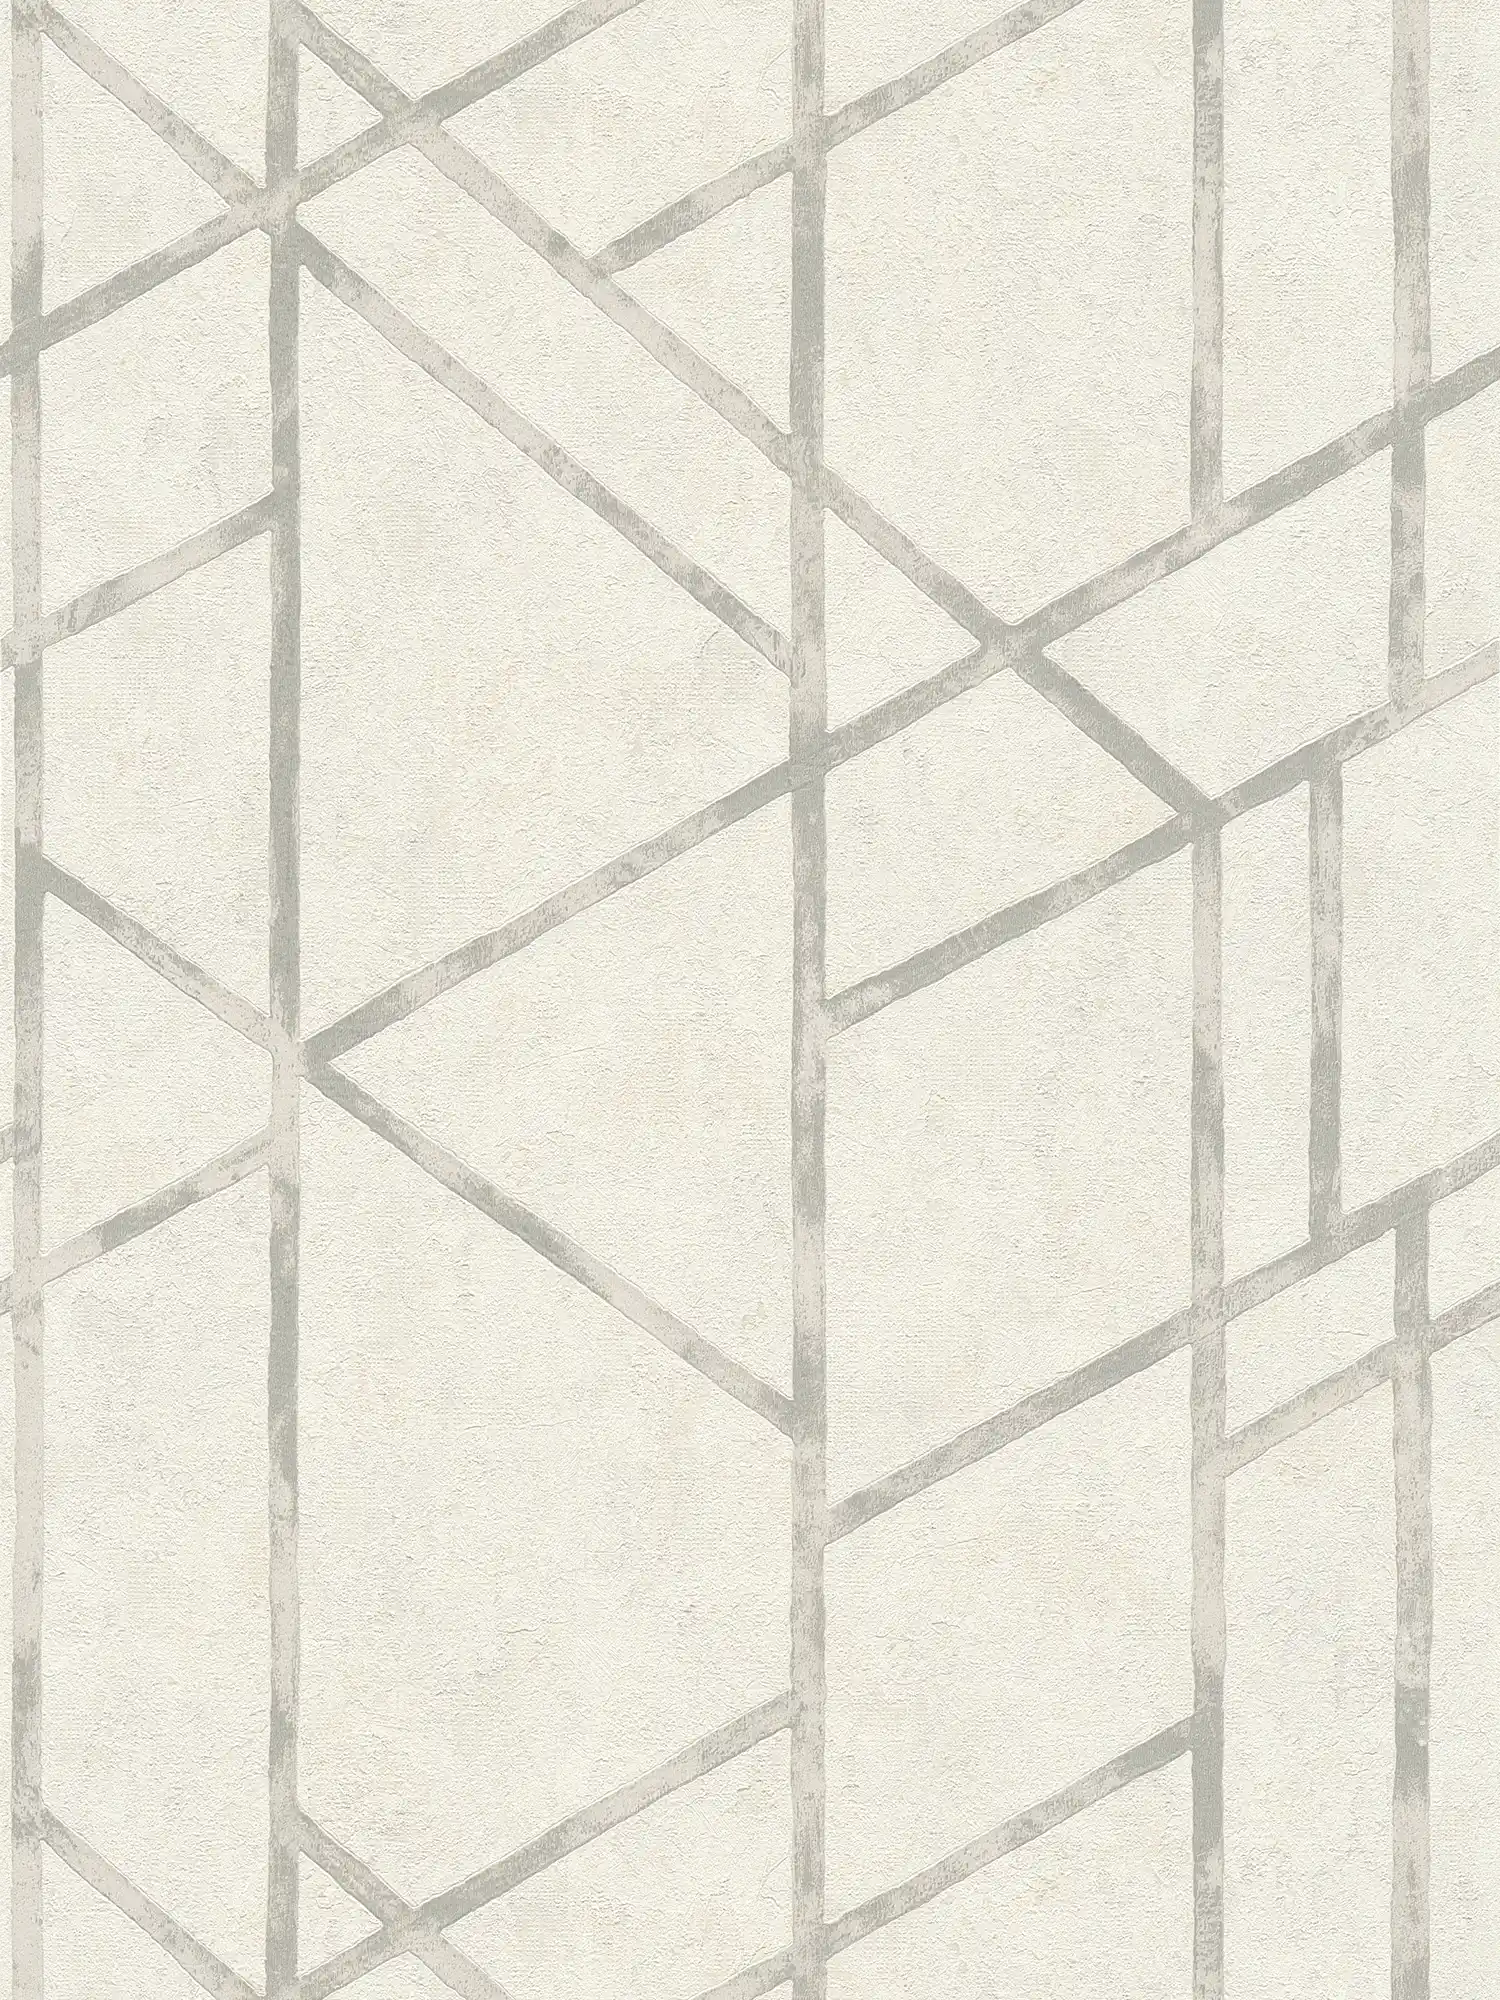 Papier peint béton avec motif graphique argenté - argent, blanc
